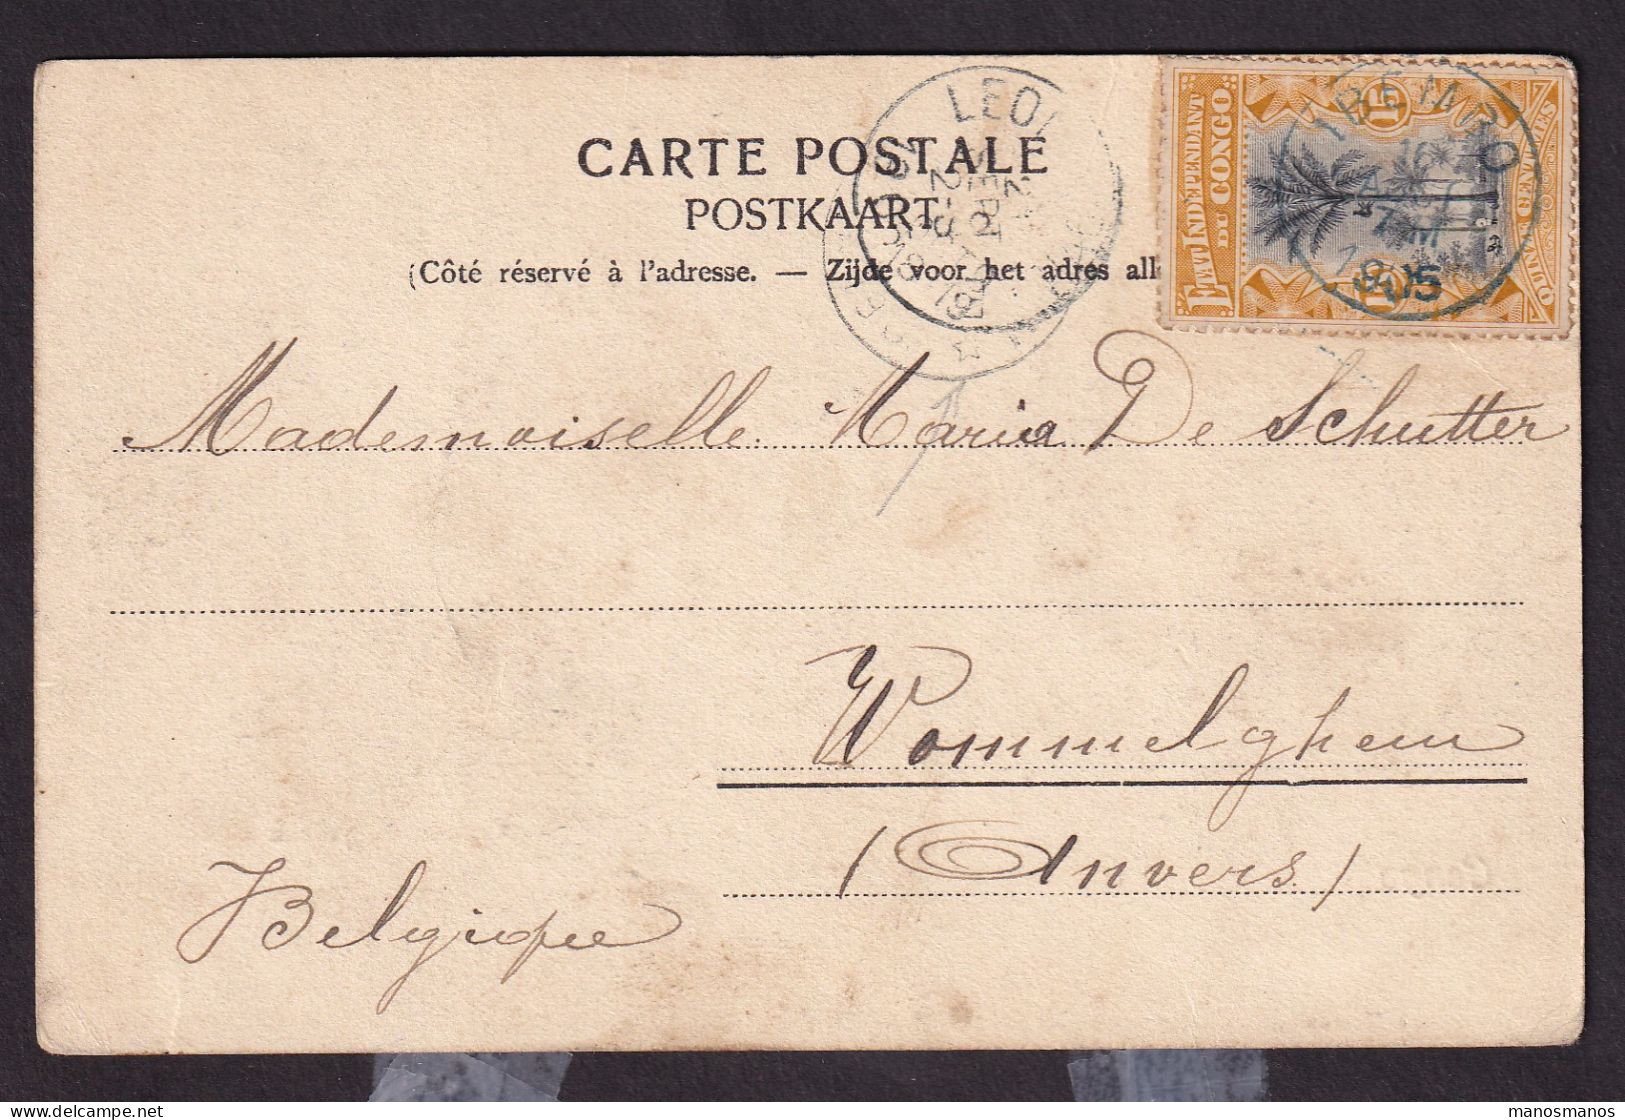 DDGG 012 - Carte-Vue TP Mols 15 C  Etat Indépendant IBEMBO (UELE) 1905 Via LEO Vers Relais WOMMELGHEM Belgique - Covers & Documents